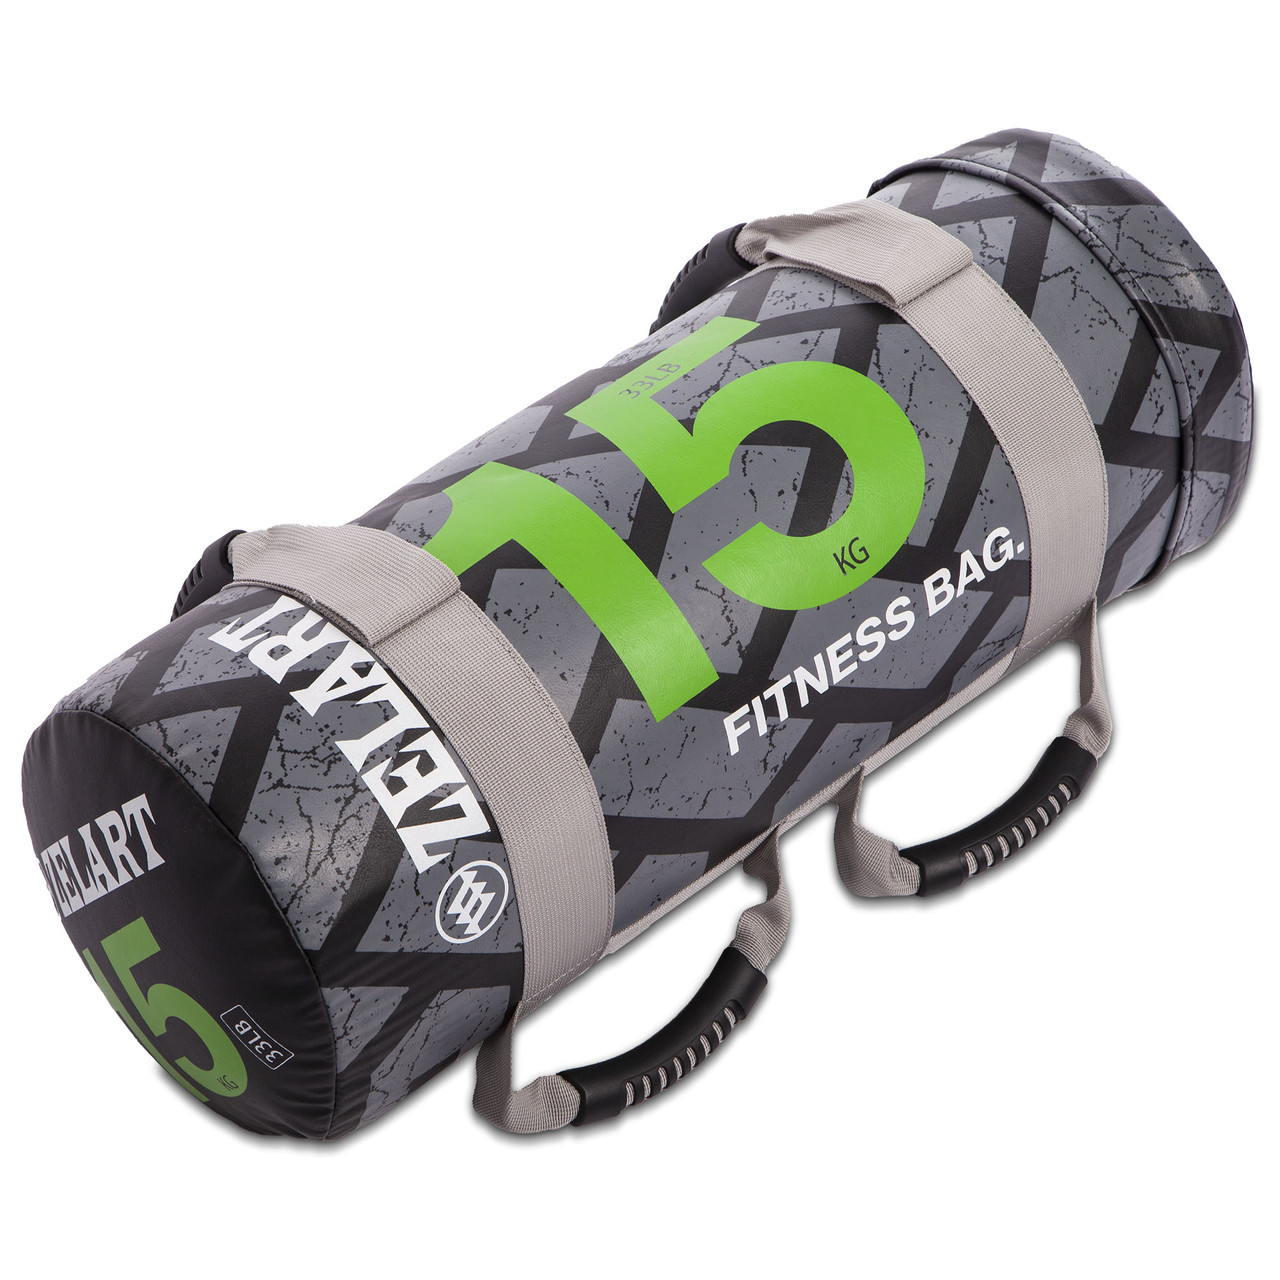 Мішок для кроссфита і фітнесу FI-0899-15 Power Bag (PVC, нейлон, вага 15кг, чорний-зелений), фото 1